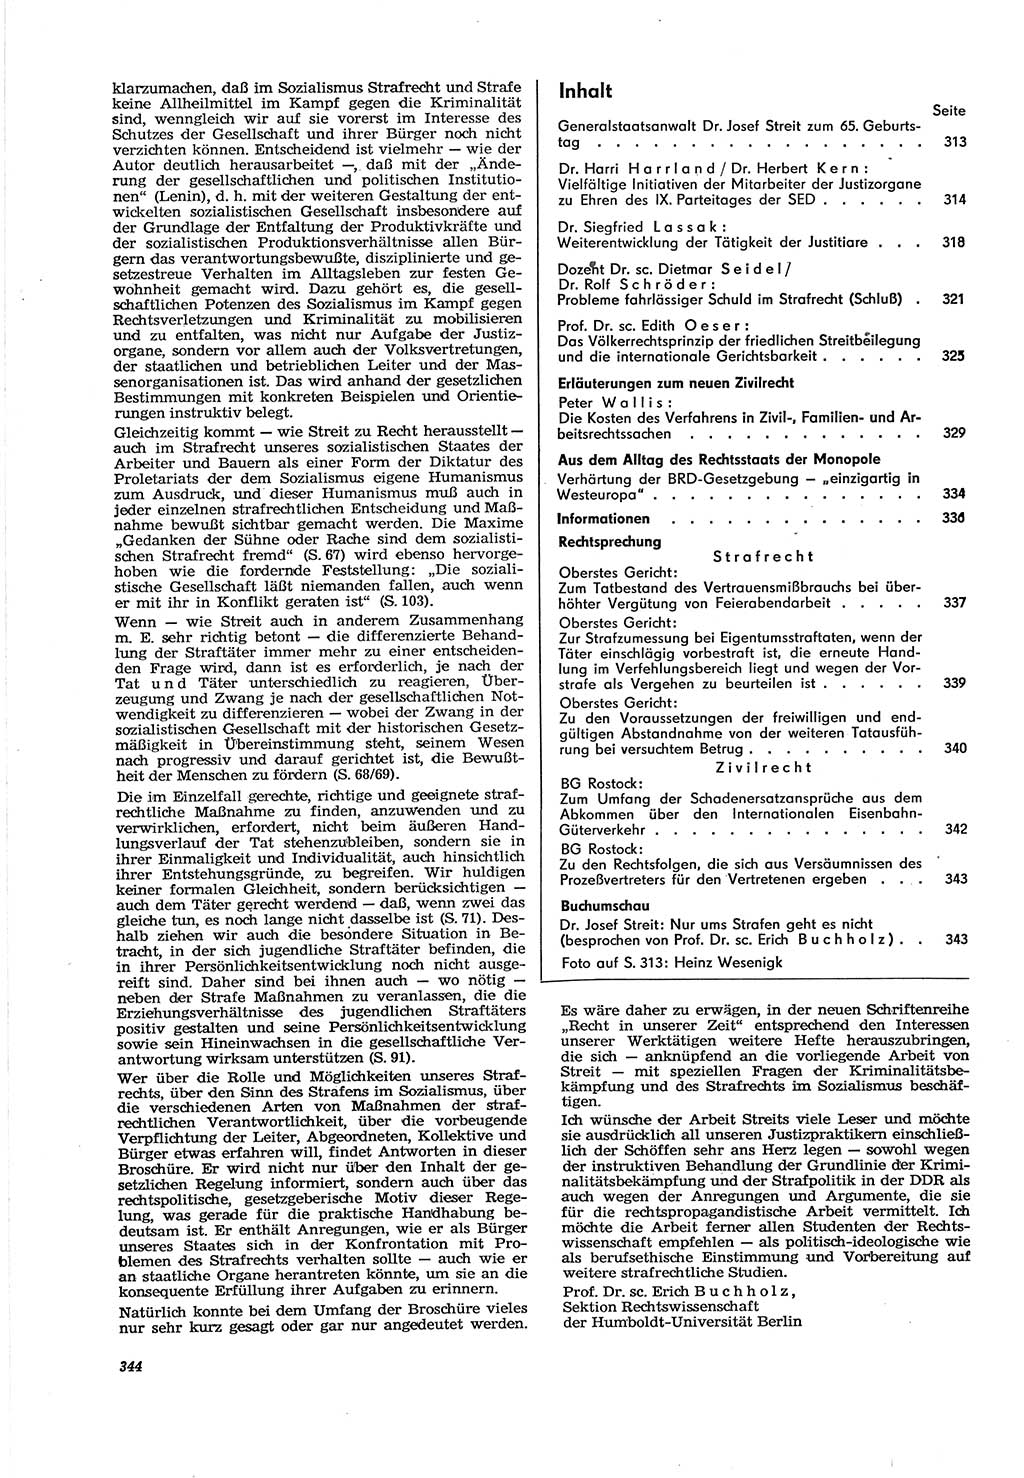 Neue Justiz (NJ), Zeitschrift für Recht und Rechtswissenschaft [Deutsche Demokratische Republik (DDR)], 30. Jahrgang 1976, Seite 344 (NJ DDR 1976, S. 344)